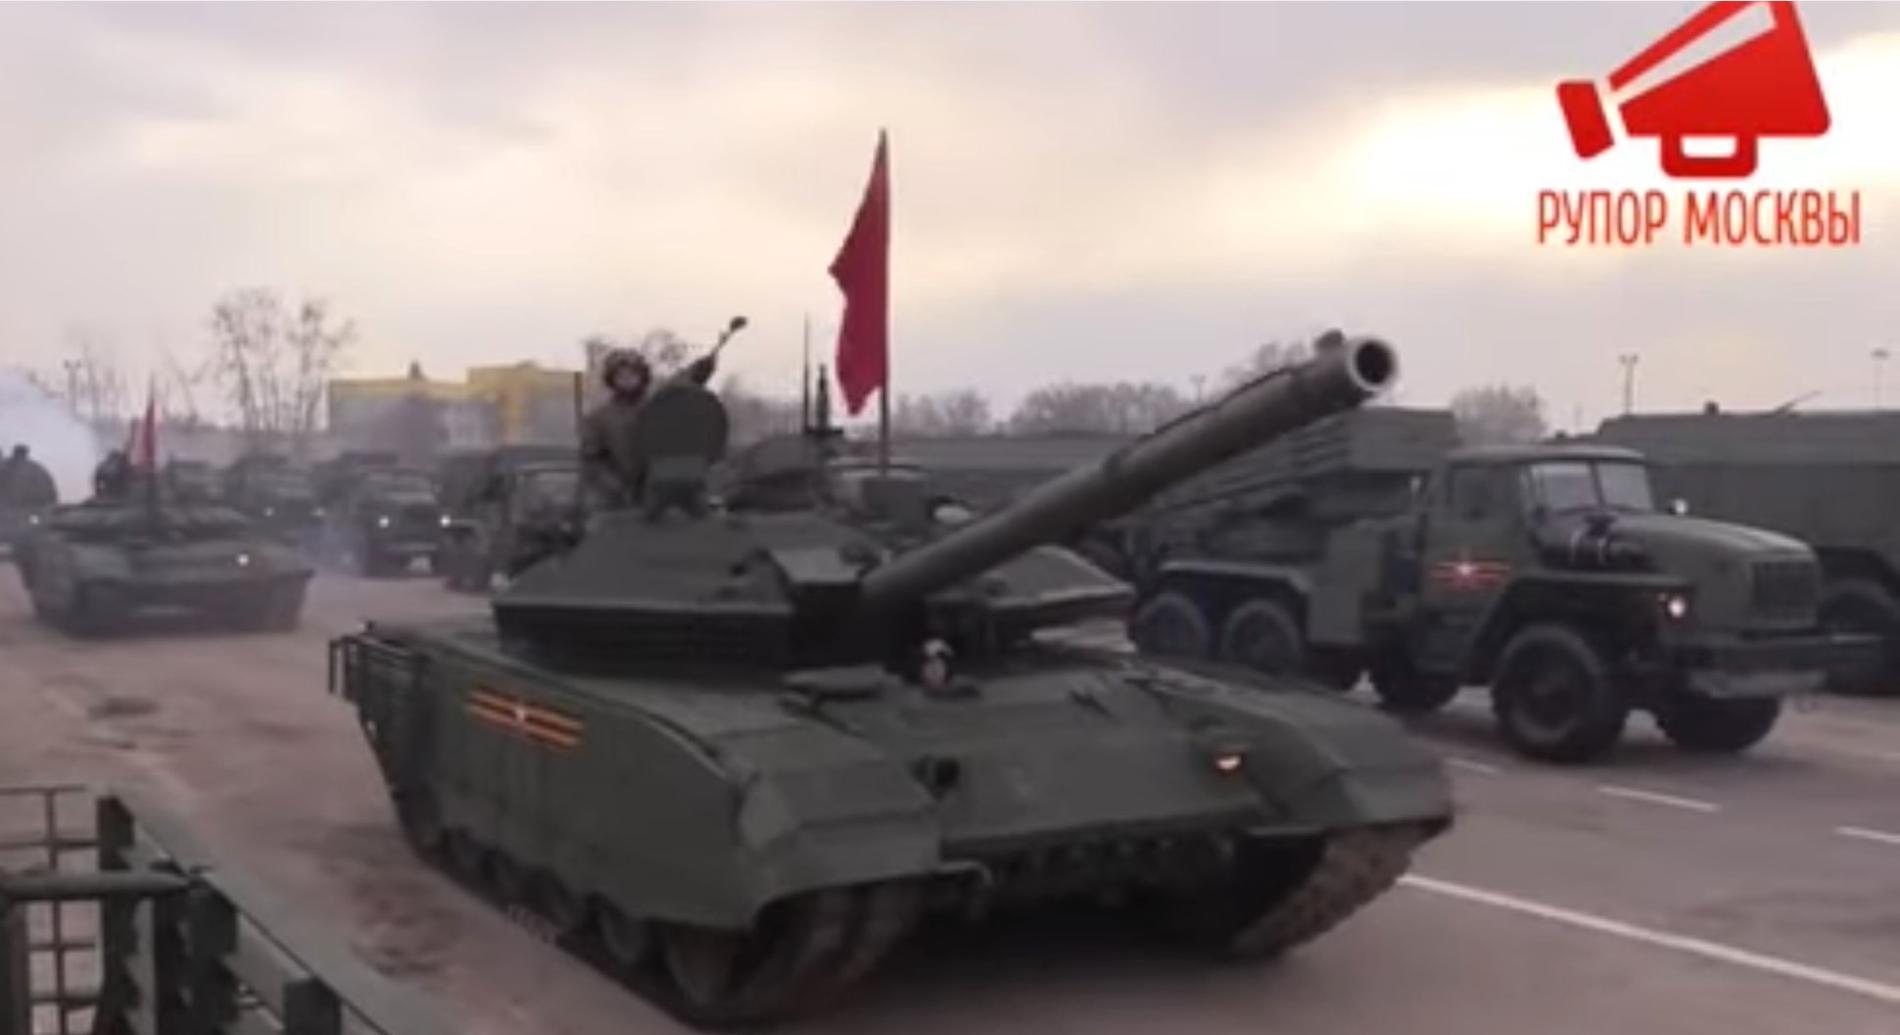 Ryska stridsvagnar med sovjetflaggor övar inför segerparaden i Moskva på måndag.